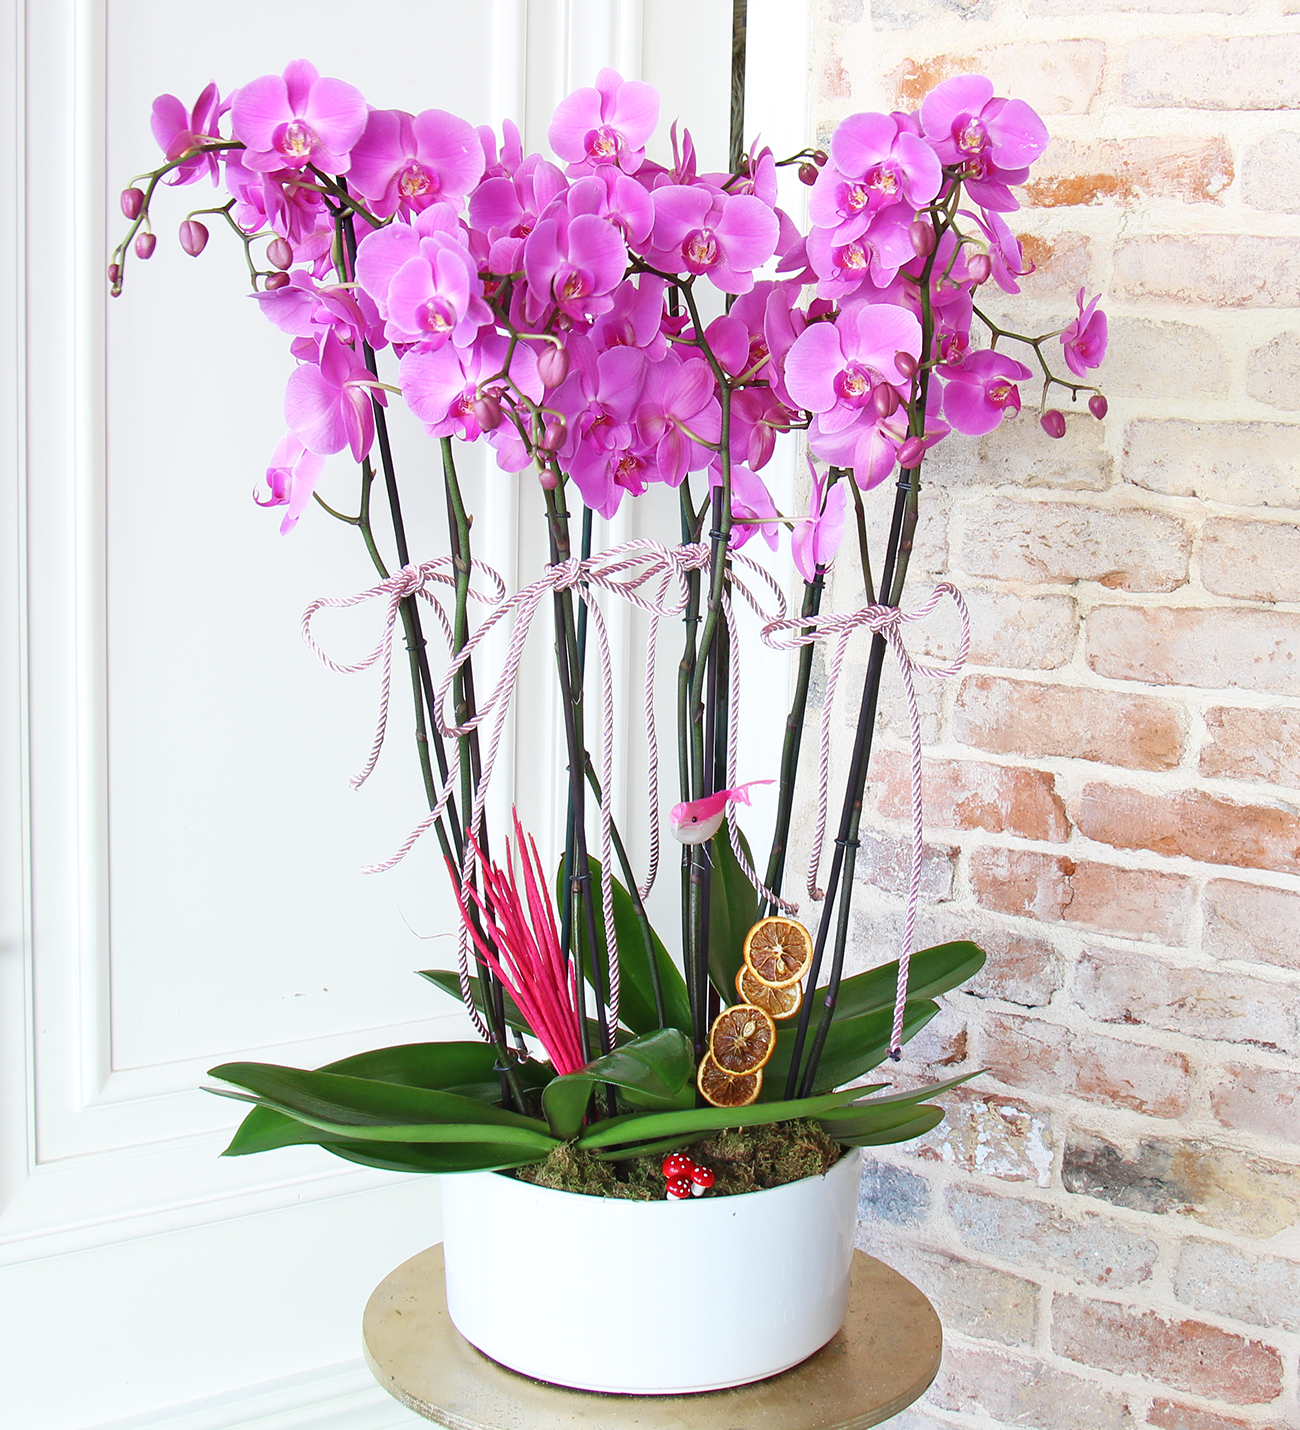 Matila seramik vazo da 8 dallı mor orkide tasarımı